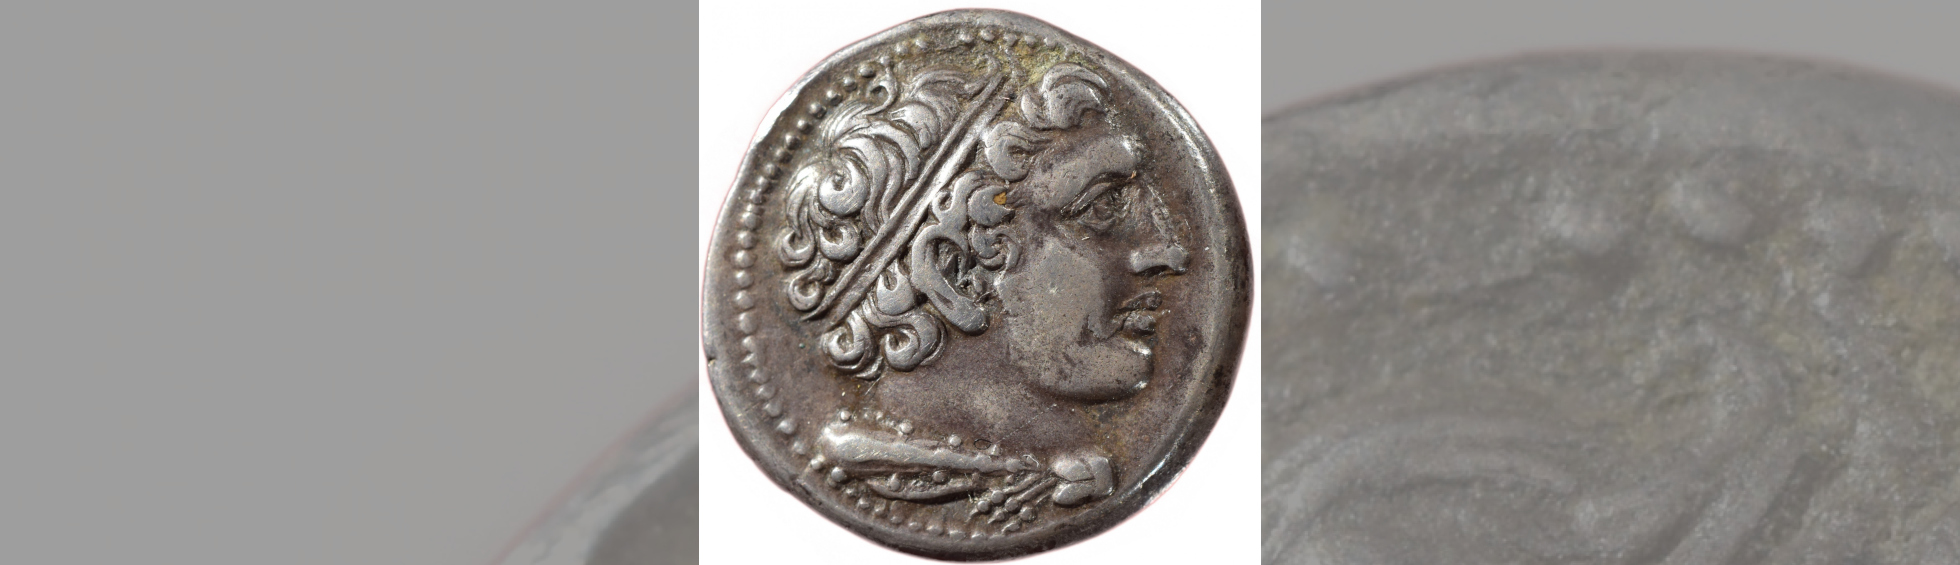 photo couleur d'une pièce de monnaie romaine - didrachmes avers